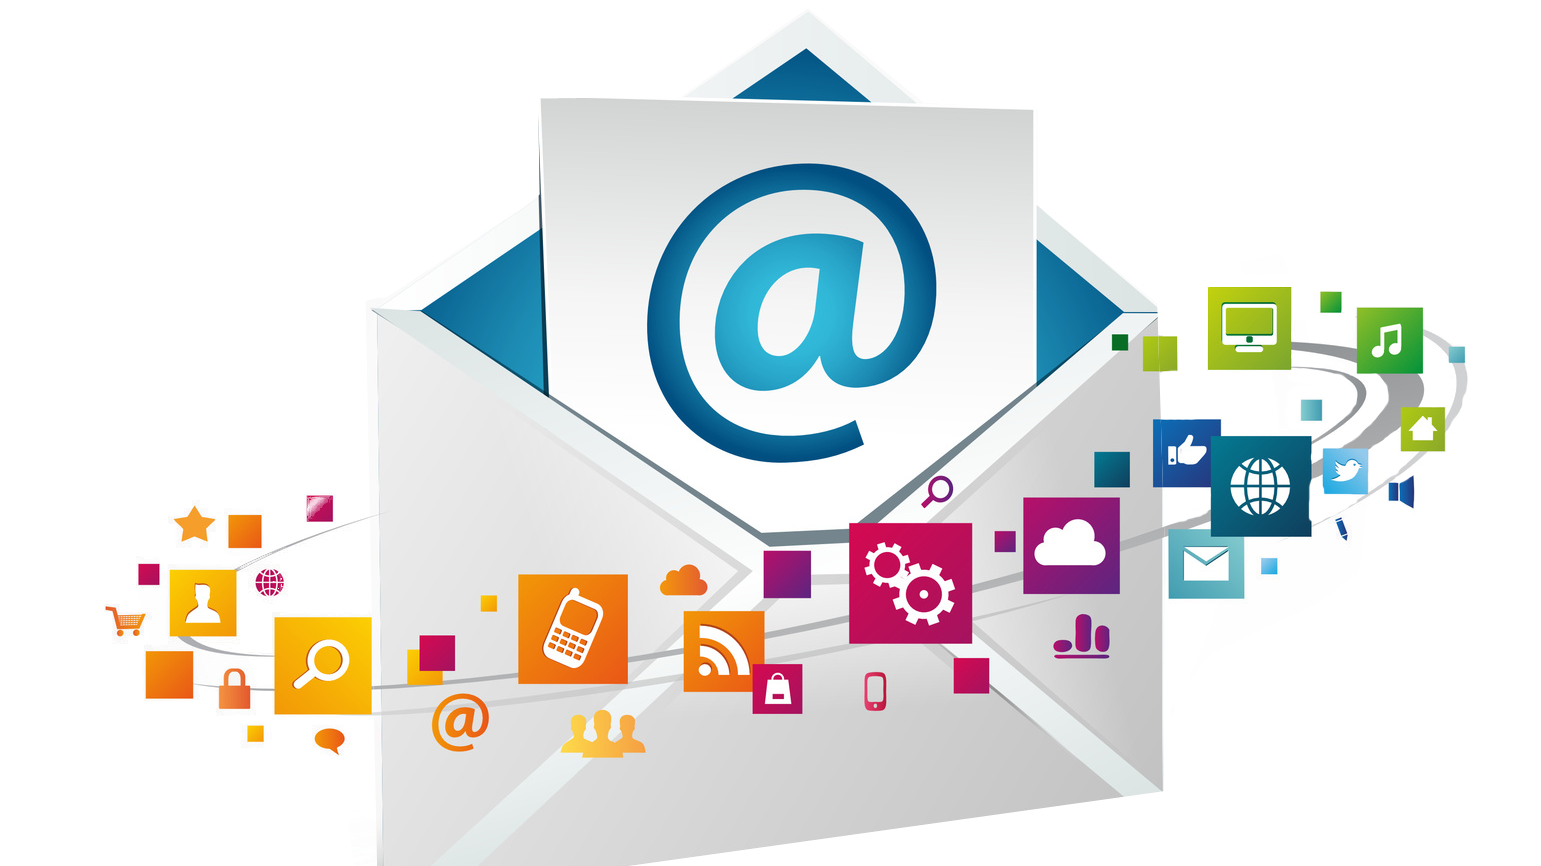 BizFly Business Email - Giải pháp email hosting được các nhà cung cấp (Gmail, Hotmail…) tin tưởng 